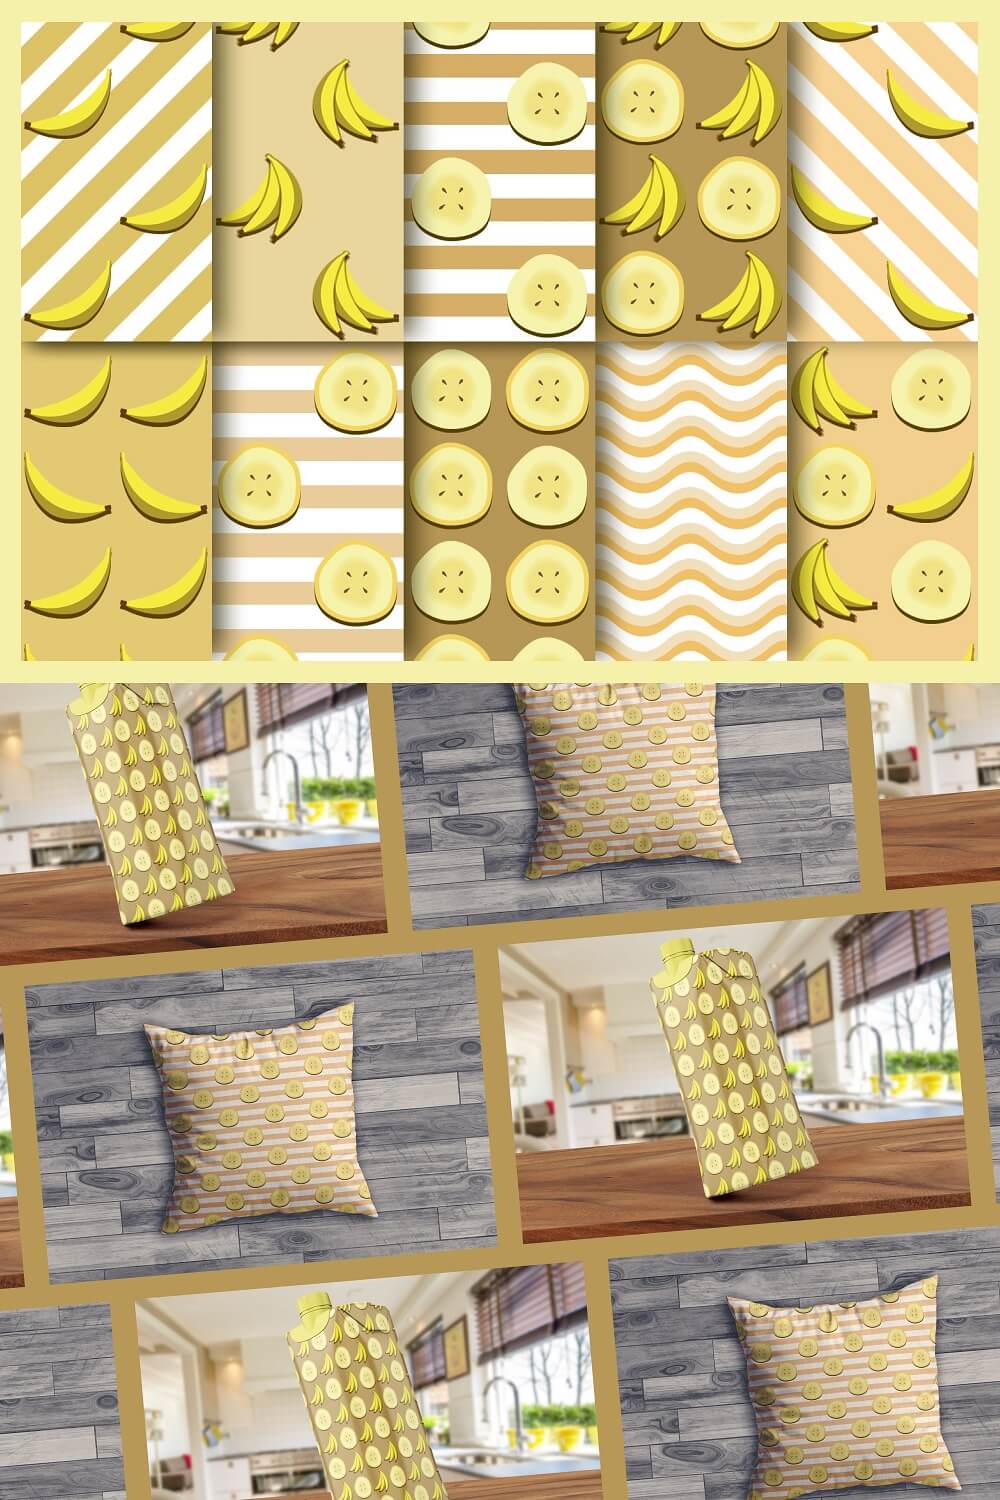 Examples of using banana print.